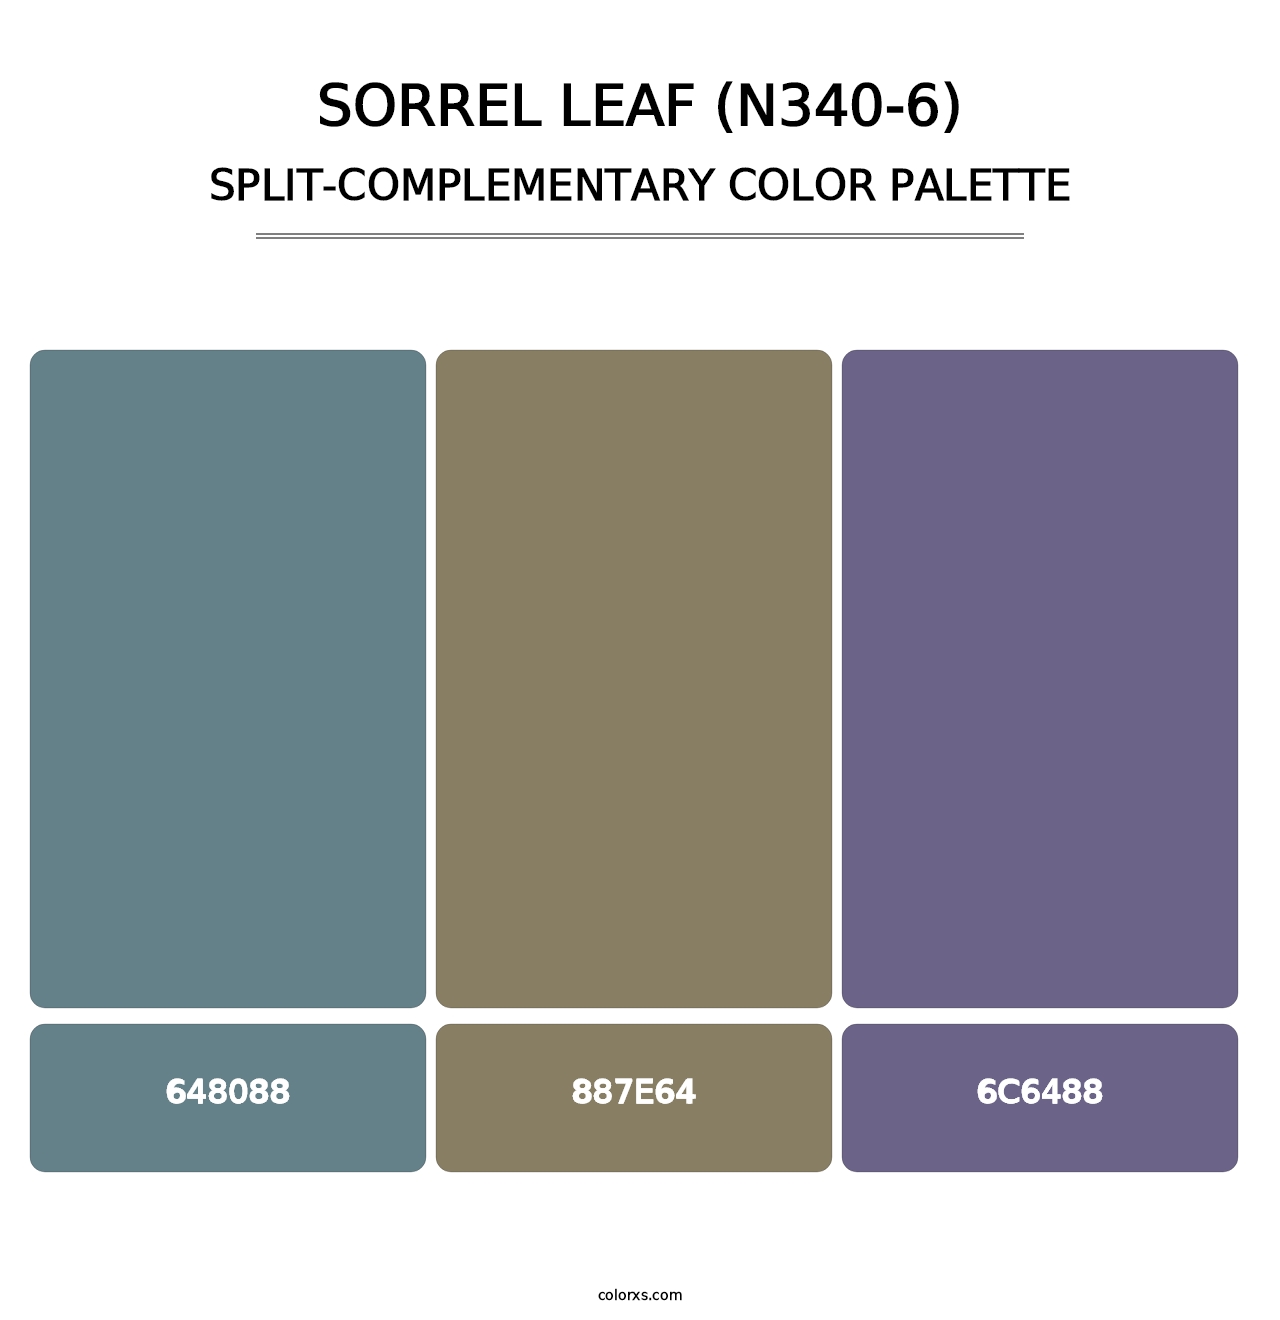 Sorrel Leaf (N340-6) - Split-Complementary Color Palette